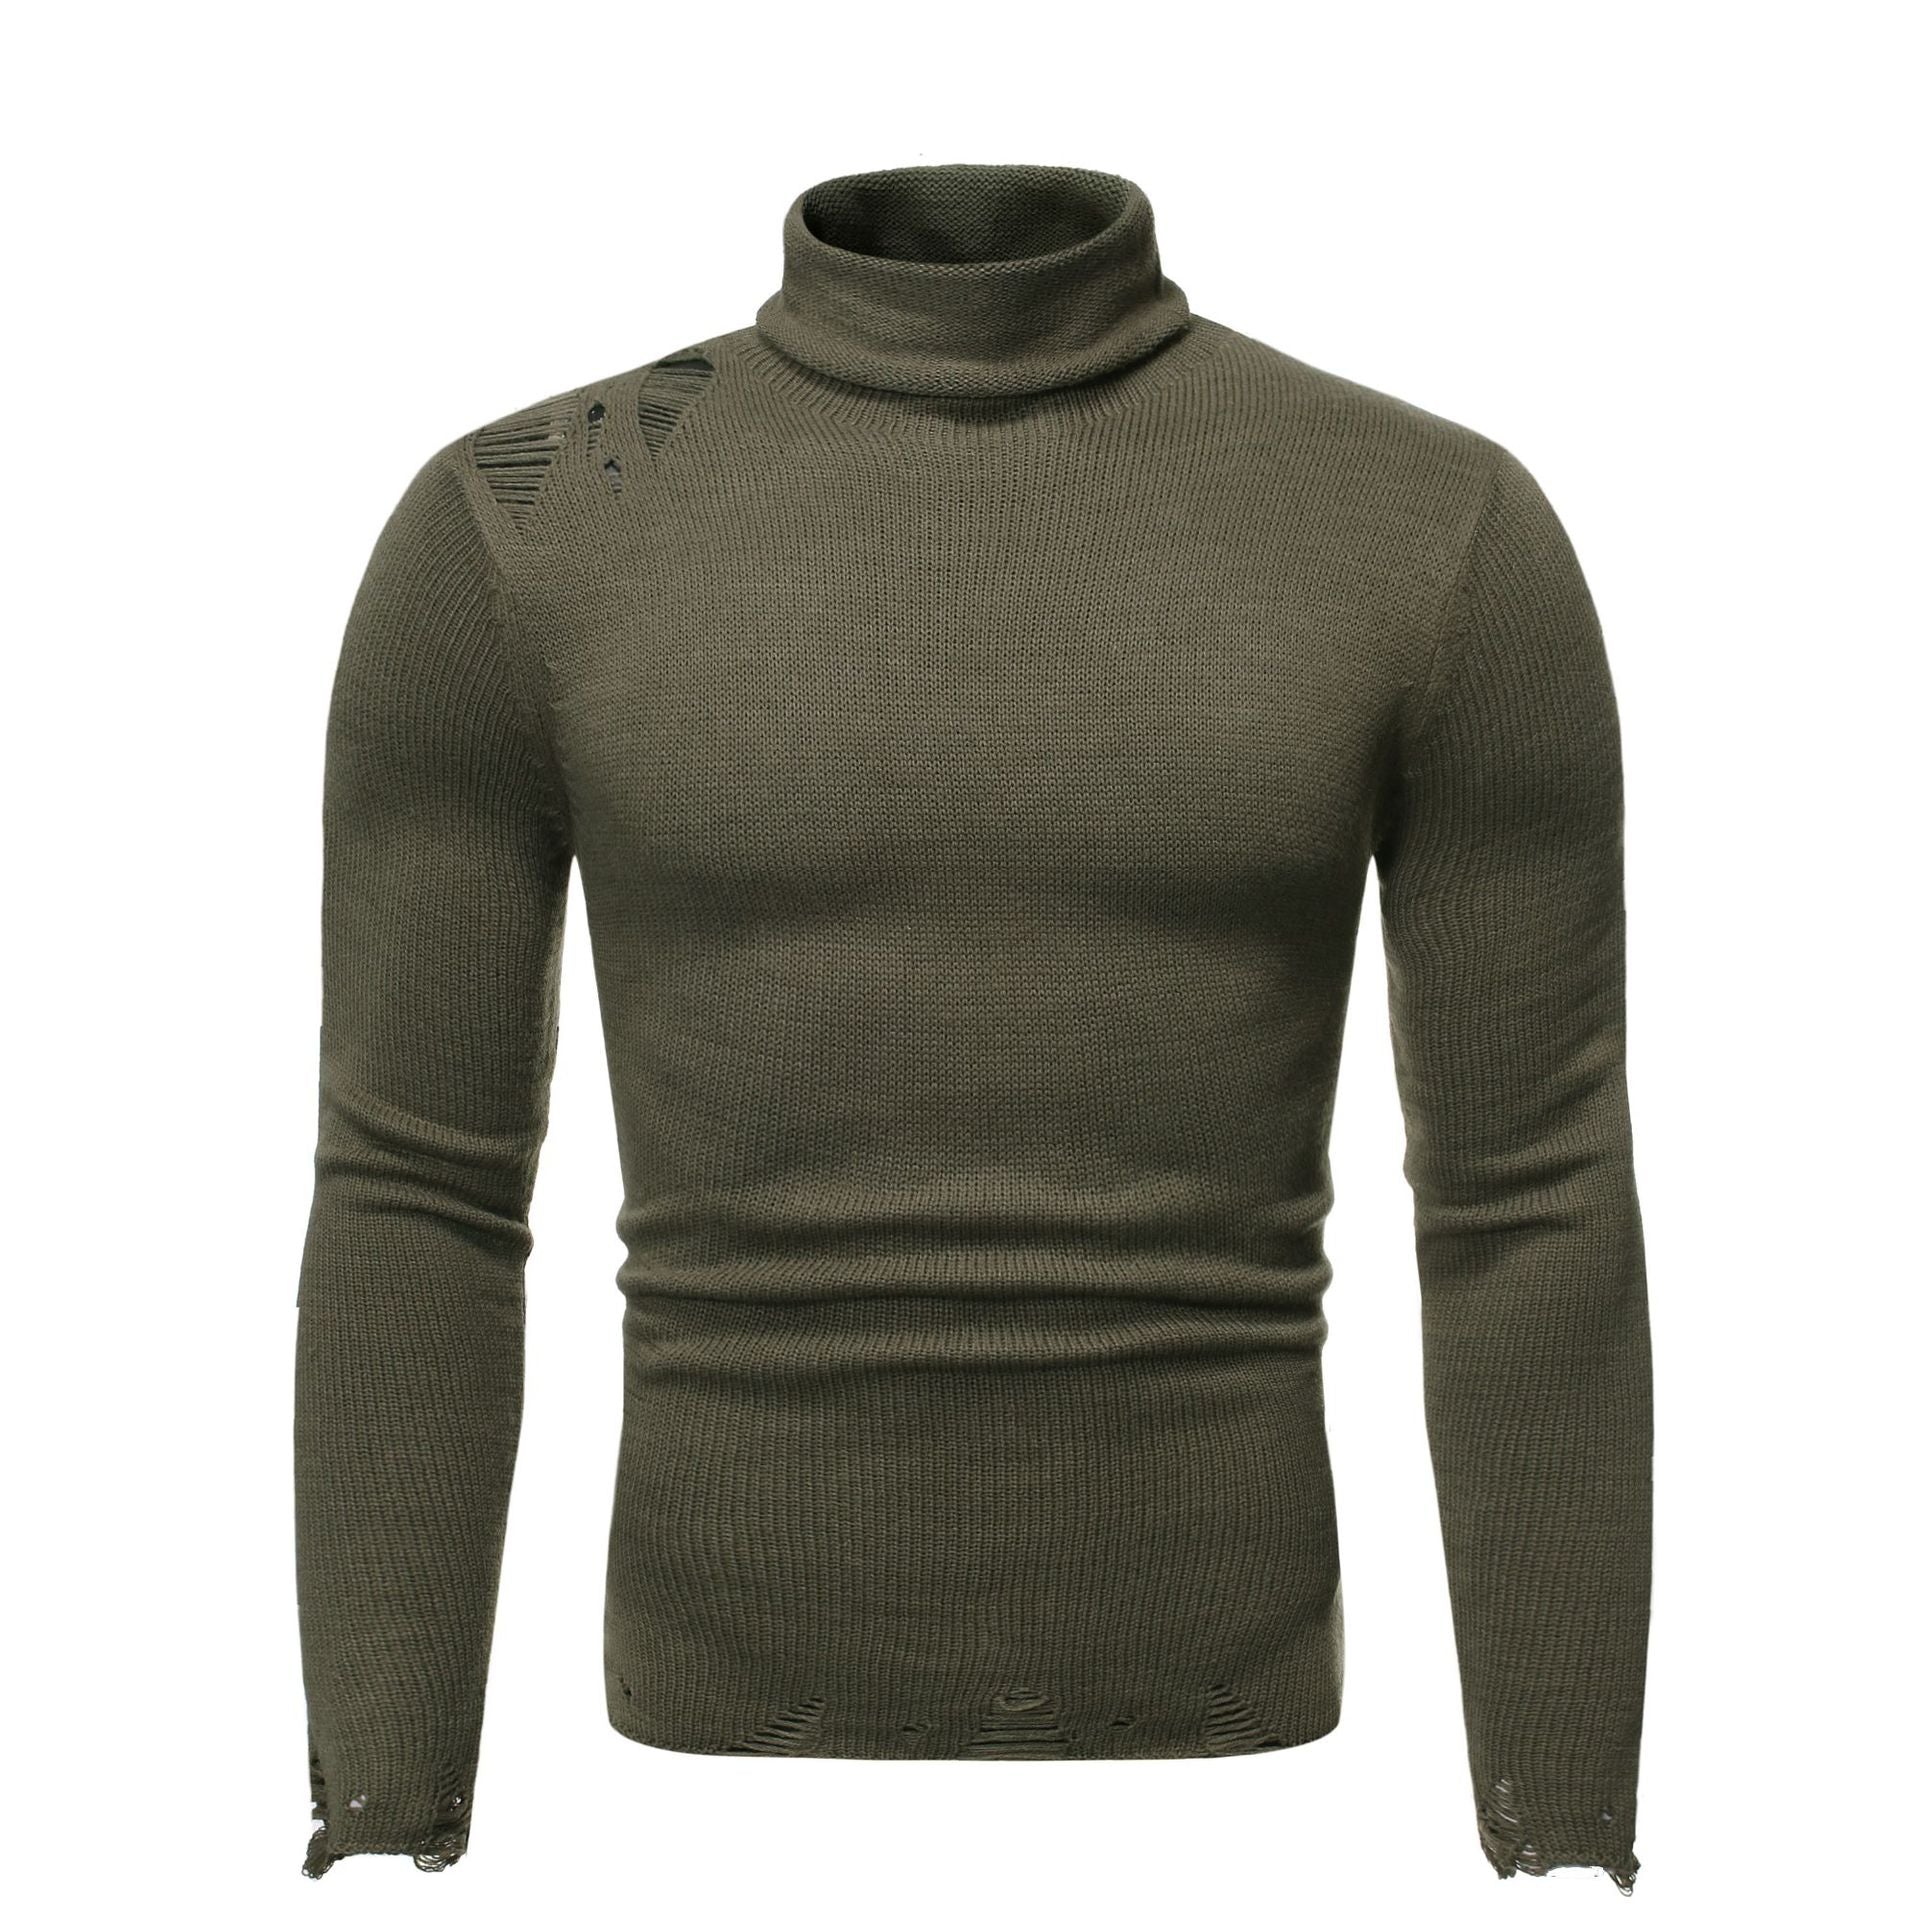 Bluza de toamna si iarna pentru barbati, din tricot subtire, cu guler inalt, pulover cu mai multe optiuni de culoare